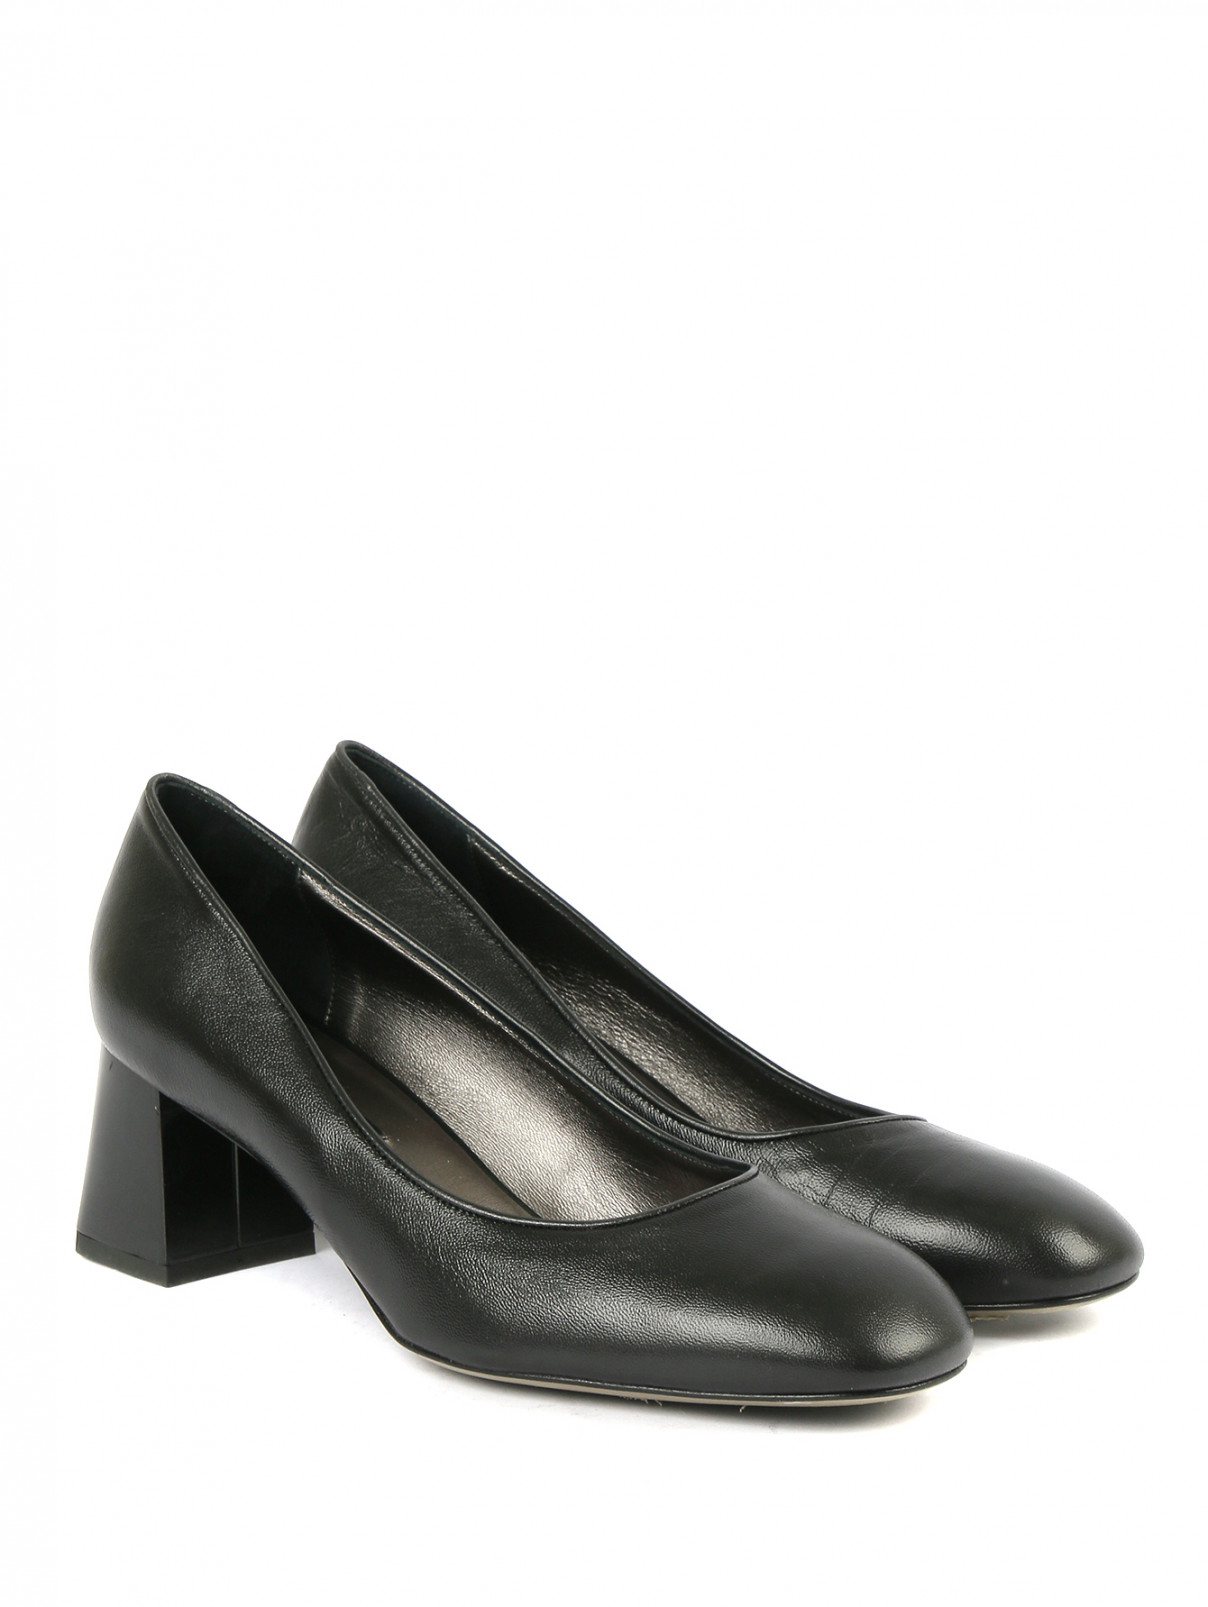 Туфли из кожи на устойчивом каблуке Marina Rinaldi  –  Общий вид  – Цвет:  Черный